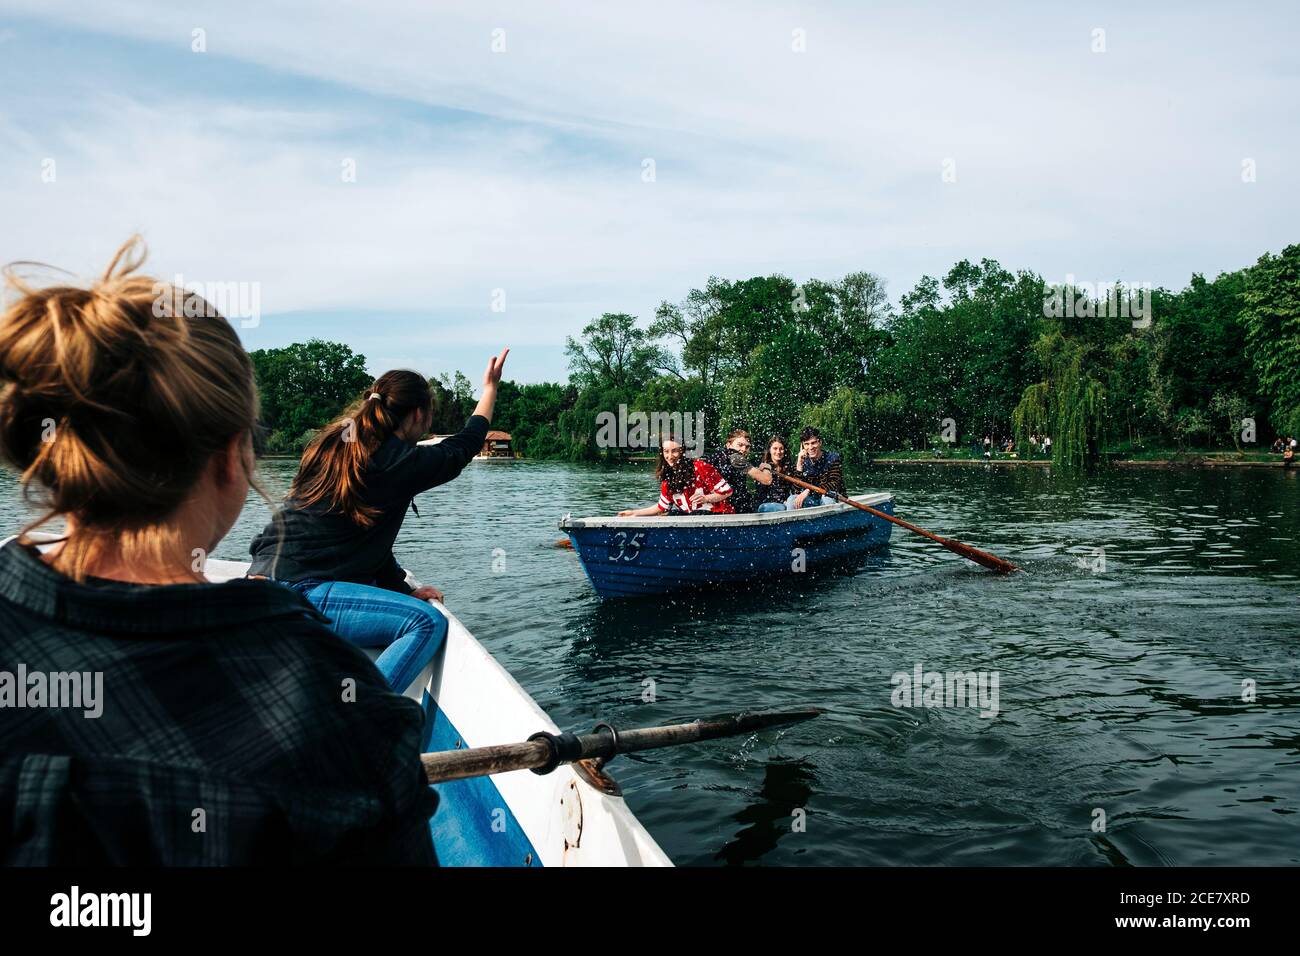 Gruppe junger Freunde, die auf Booten entlang des friedlichen Flusses schwimmen, während sie mit erhobenem Arm in St. George, Siebenbürgen, Rumänien, plaudern und gestikulieren Stockfoto